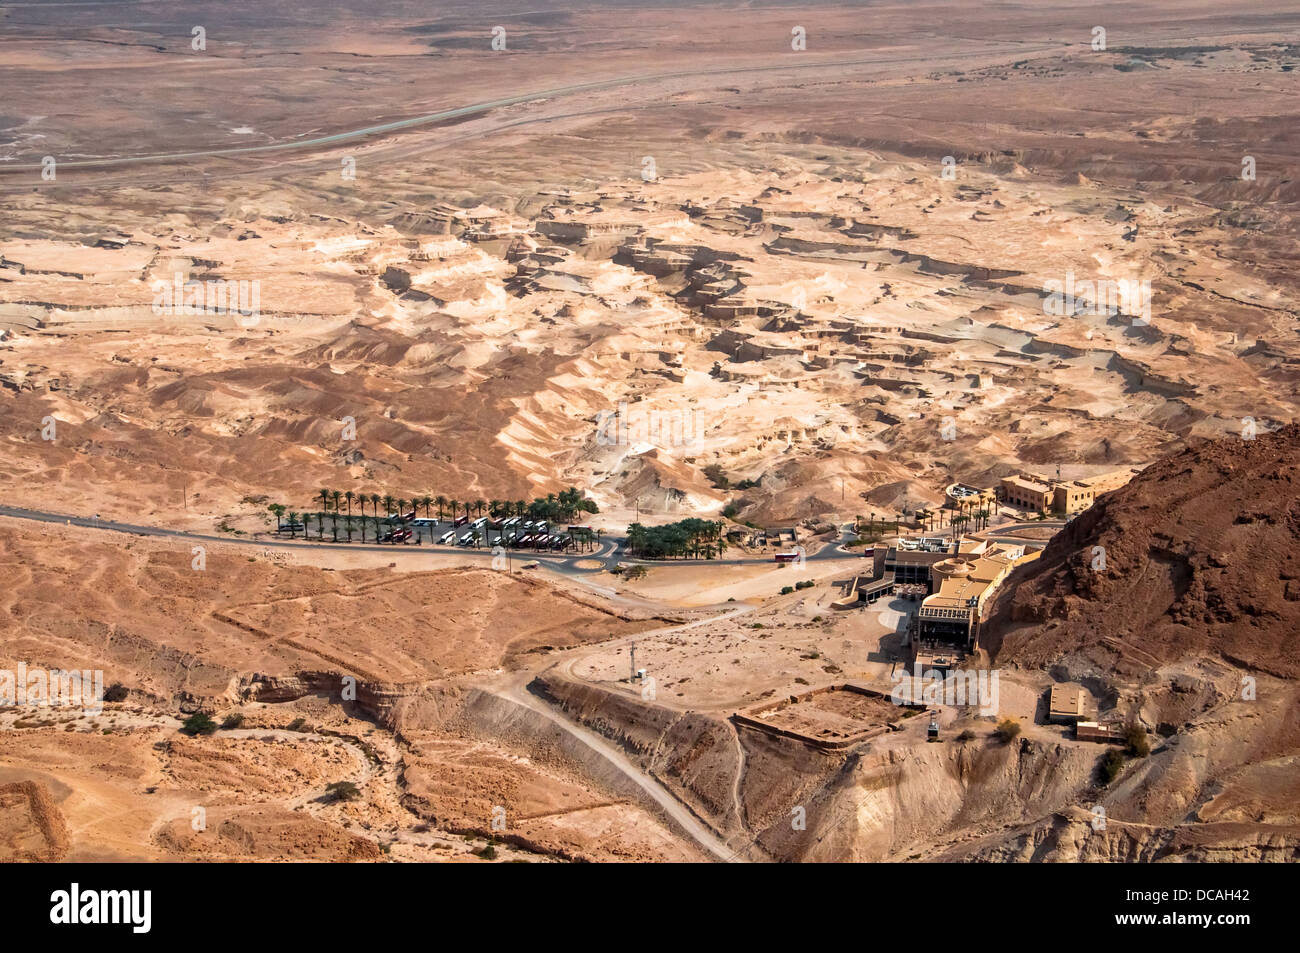 Touristische Resort in der Judäischen Wüste am Fuße des Berges waren Masada Festung von dem Herodes die großen erbaut wurde Stockfoto